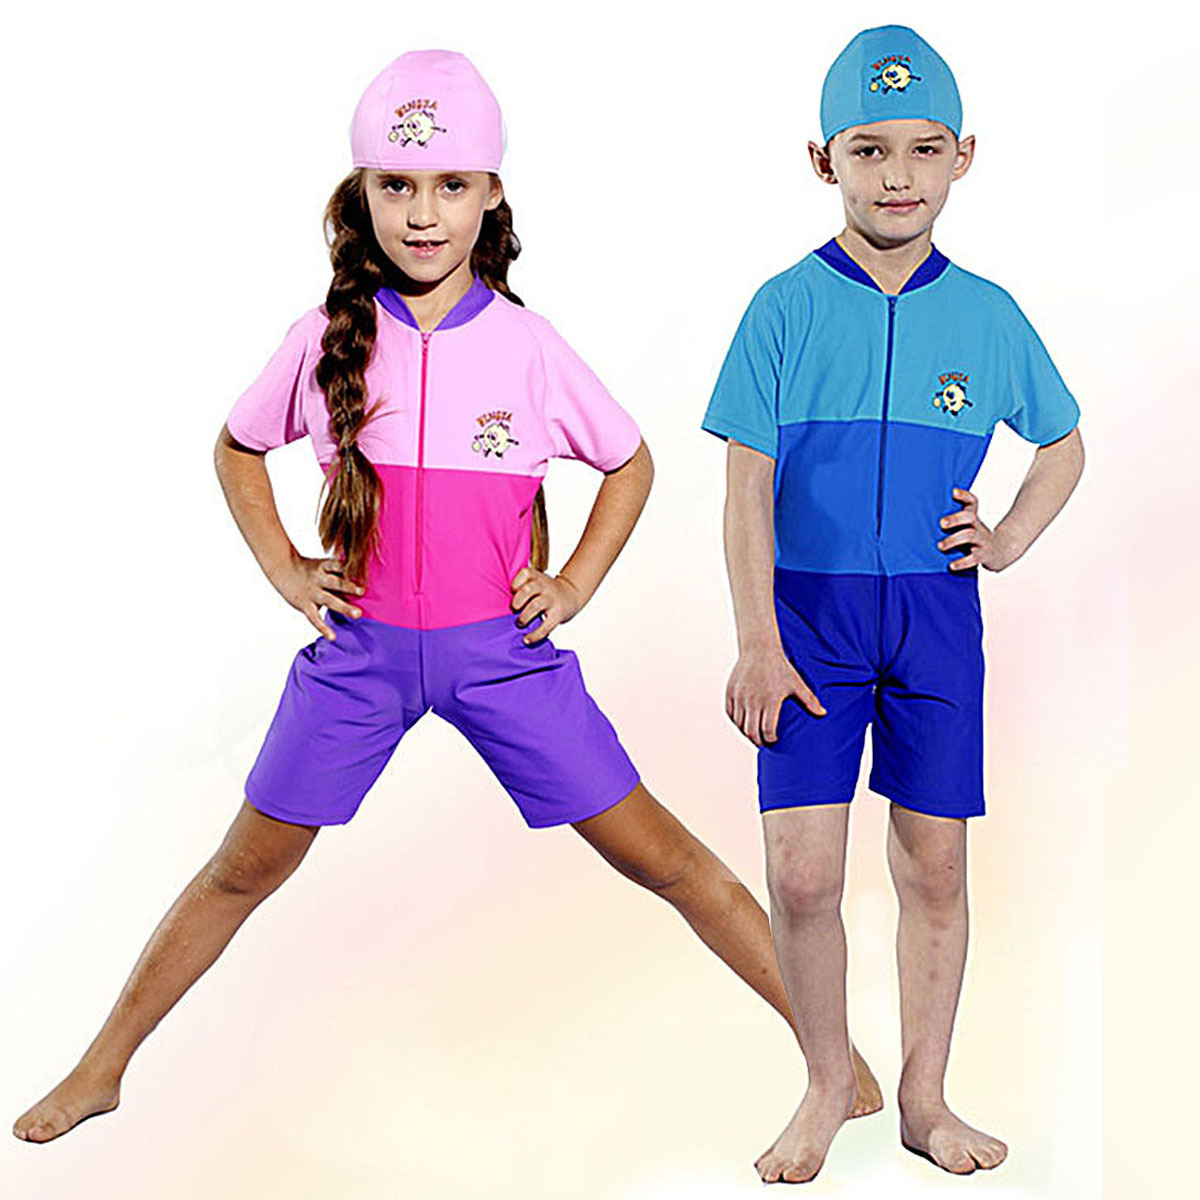 All express Yingfa britain child swimwear male child female child thermal sunscreen one piece swimwear Free Shipping